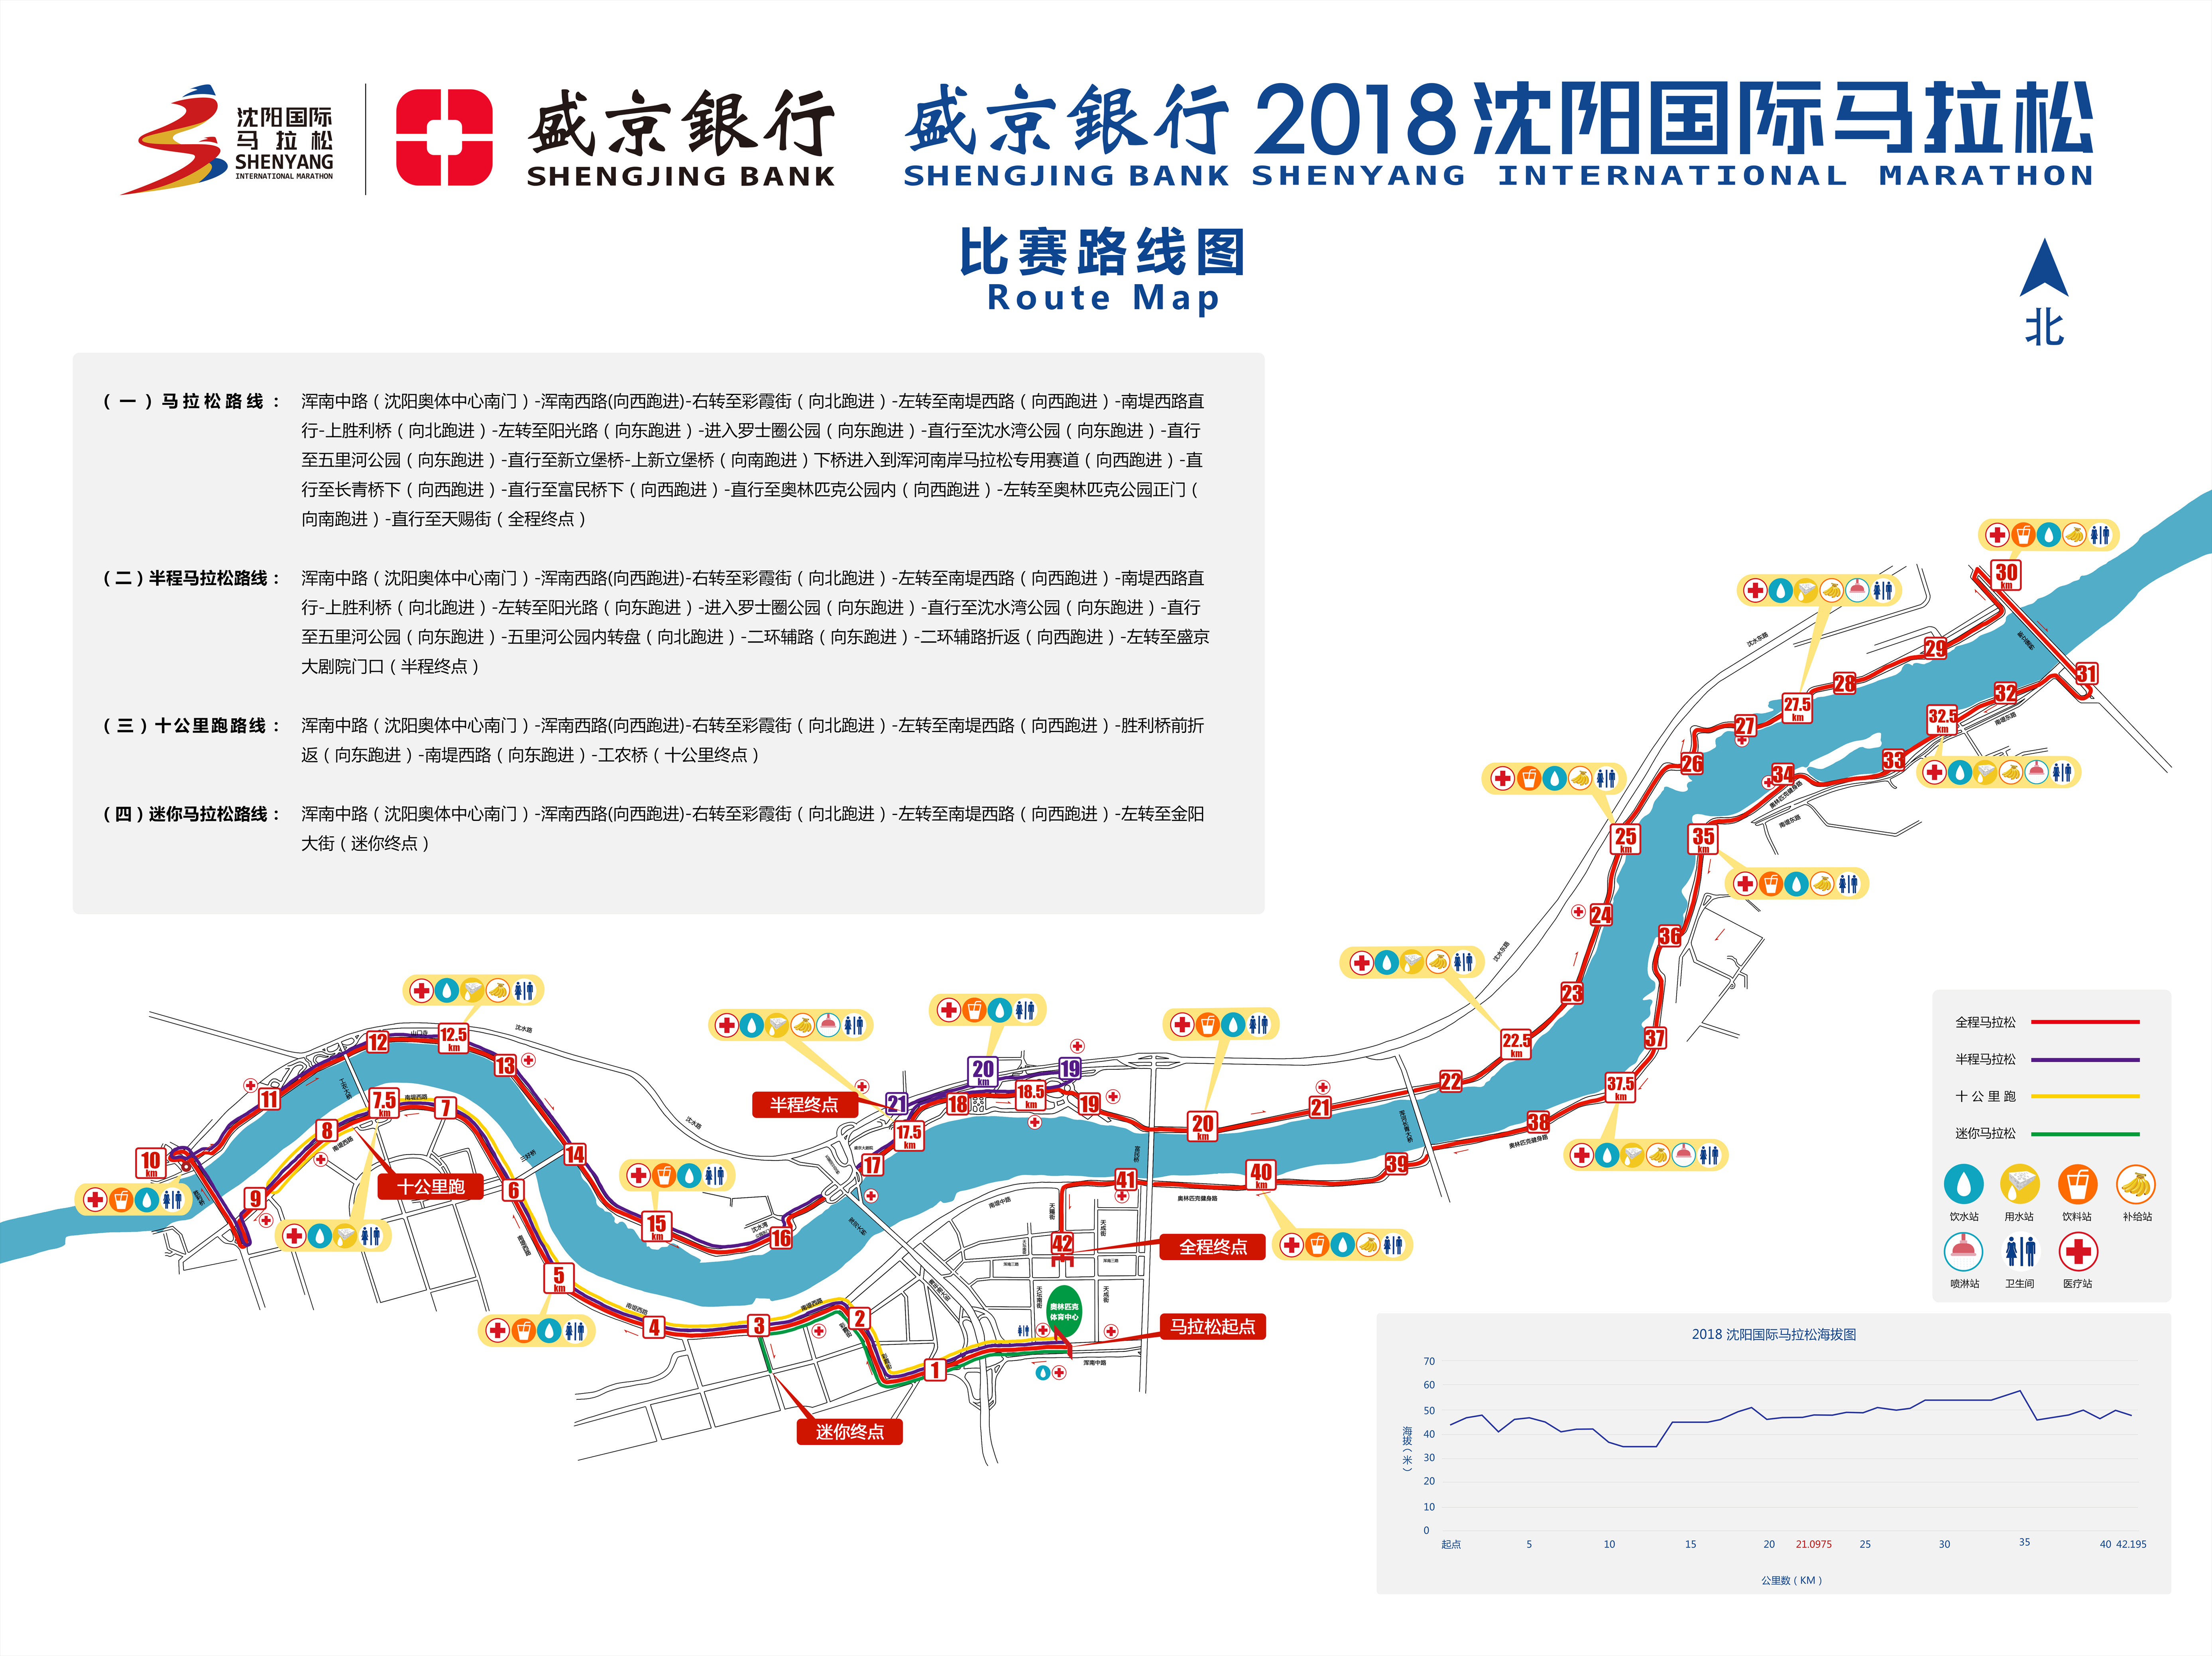 2018瀋陽國際馬拉松